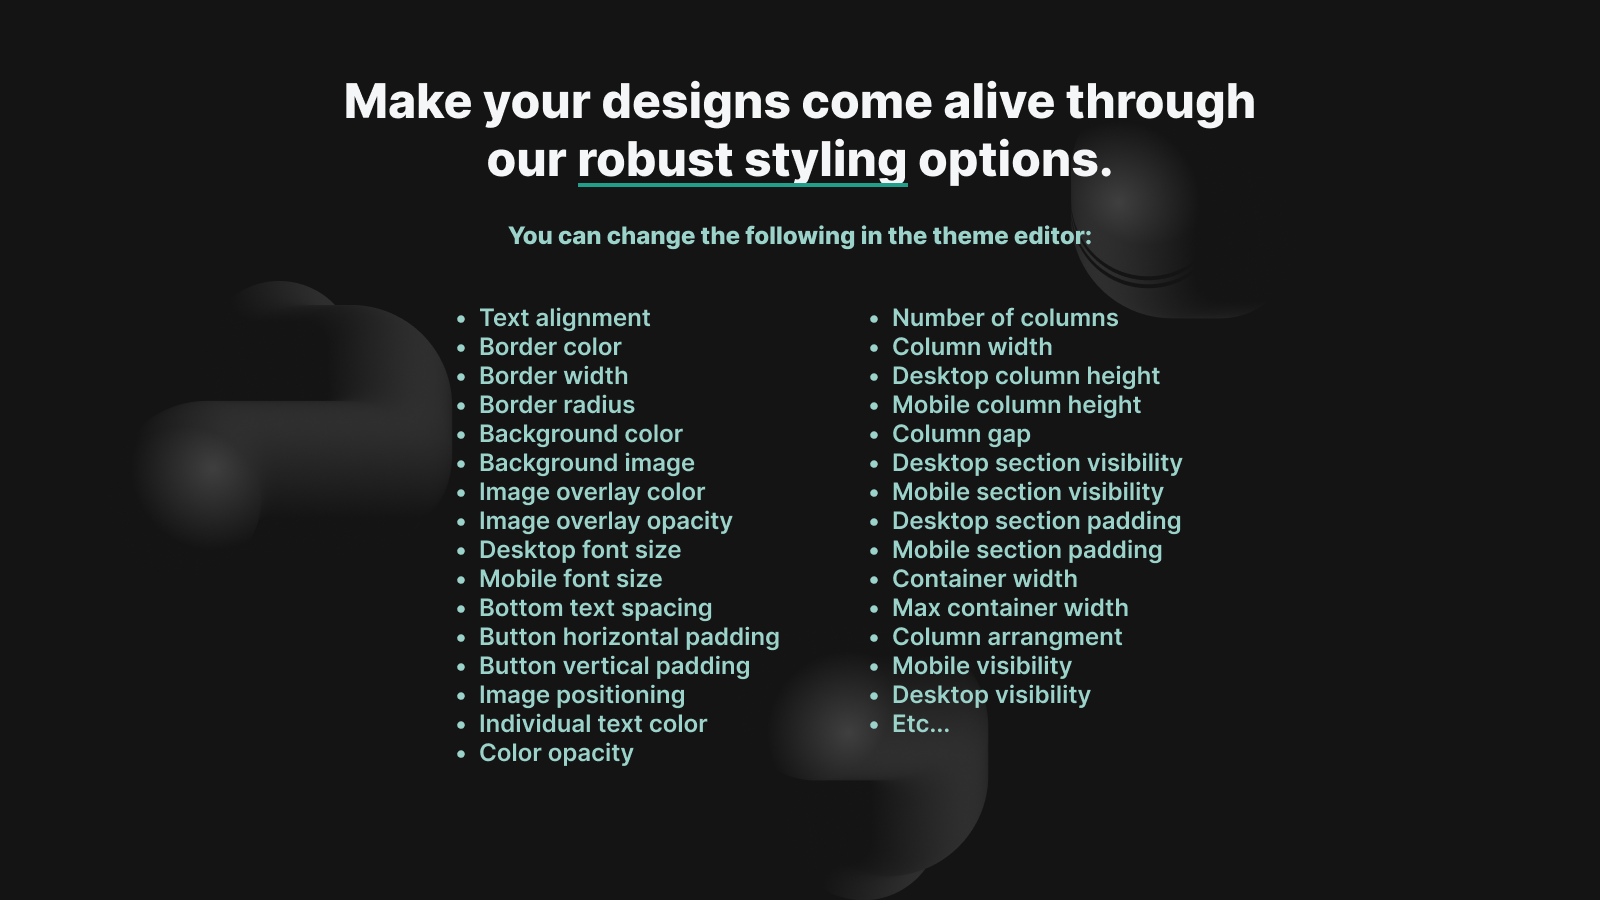 Make your designs come alive